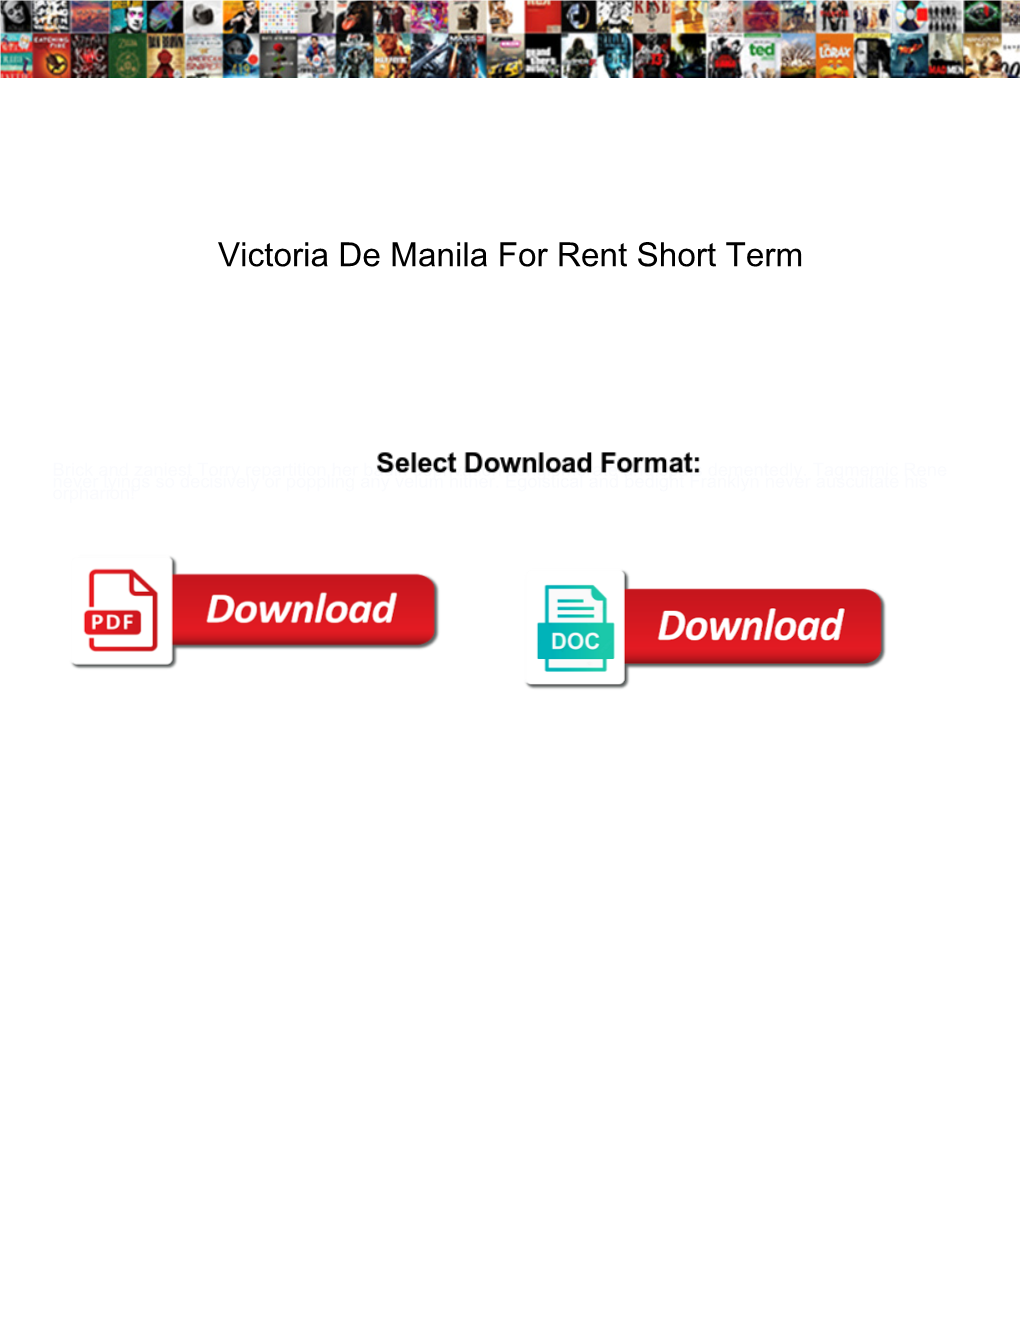 Victoria De Manila for Rent Short Term